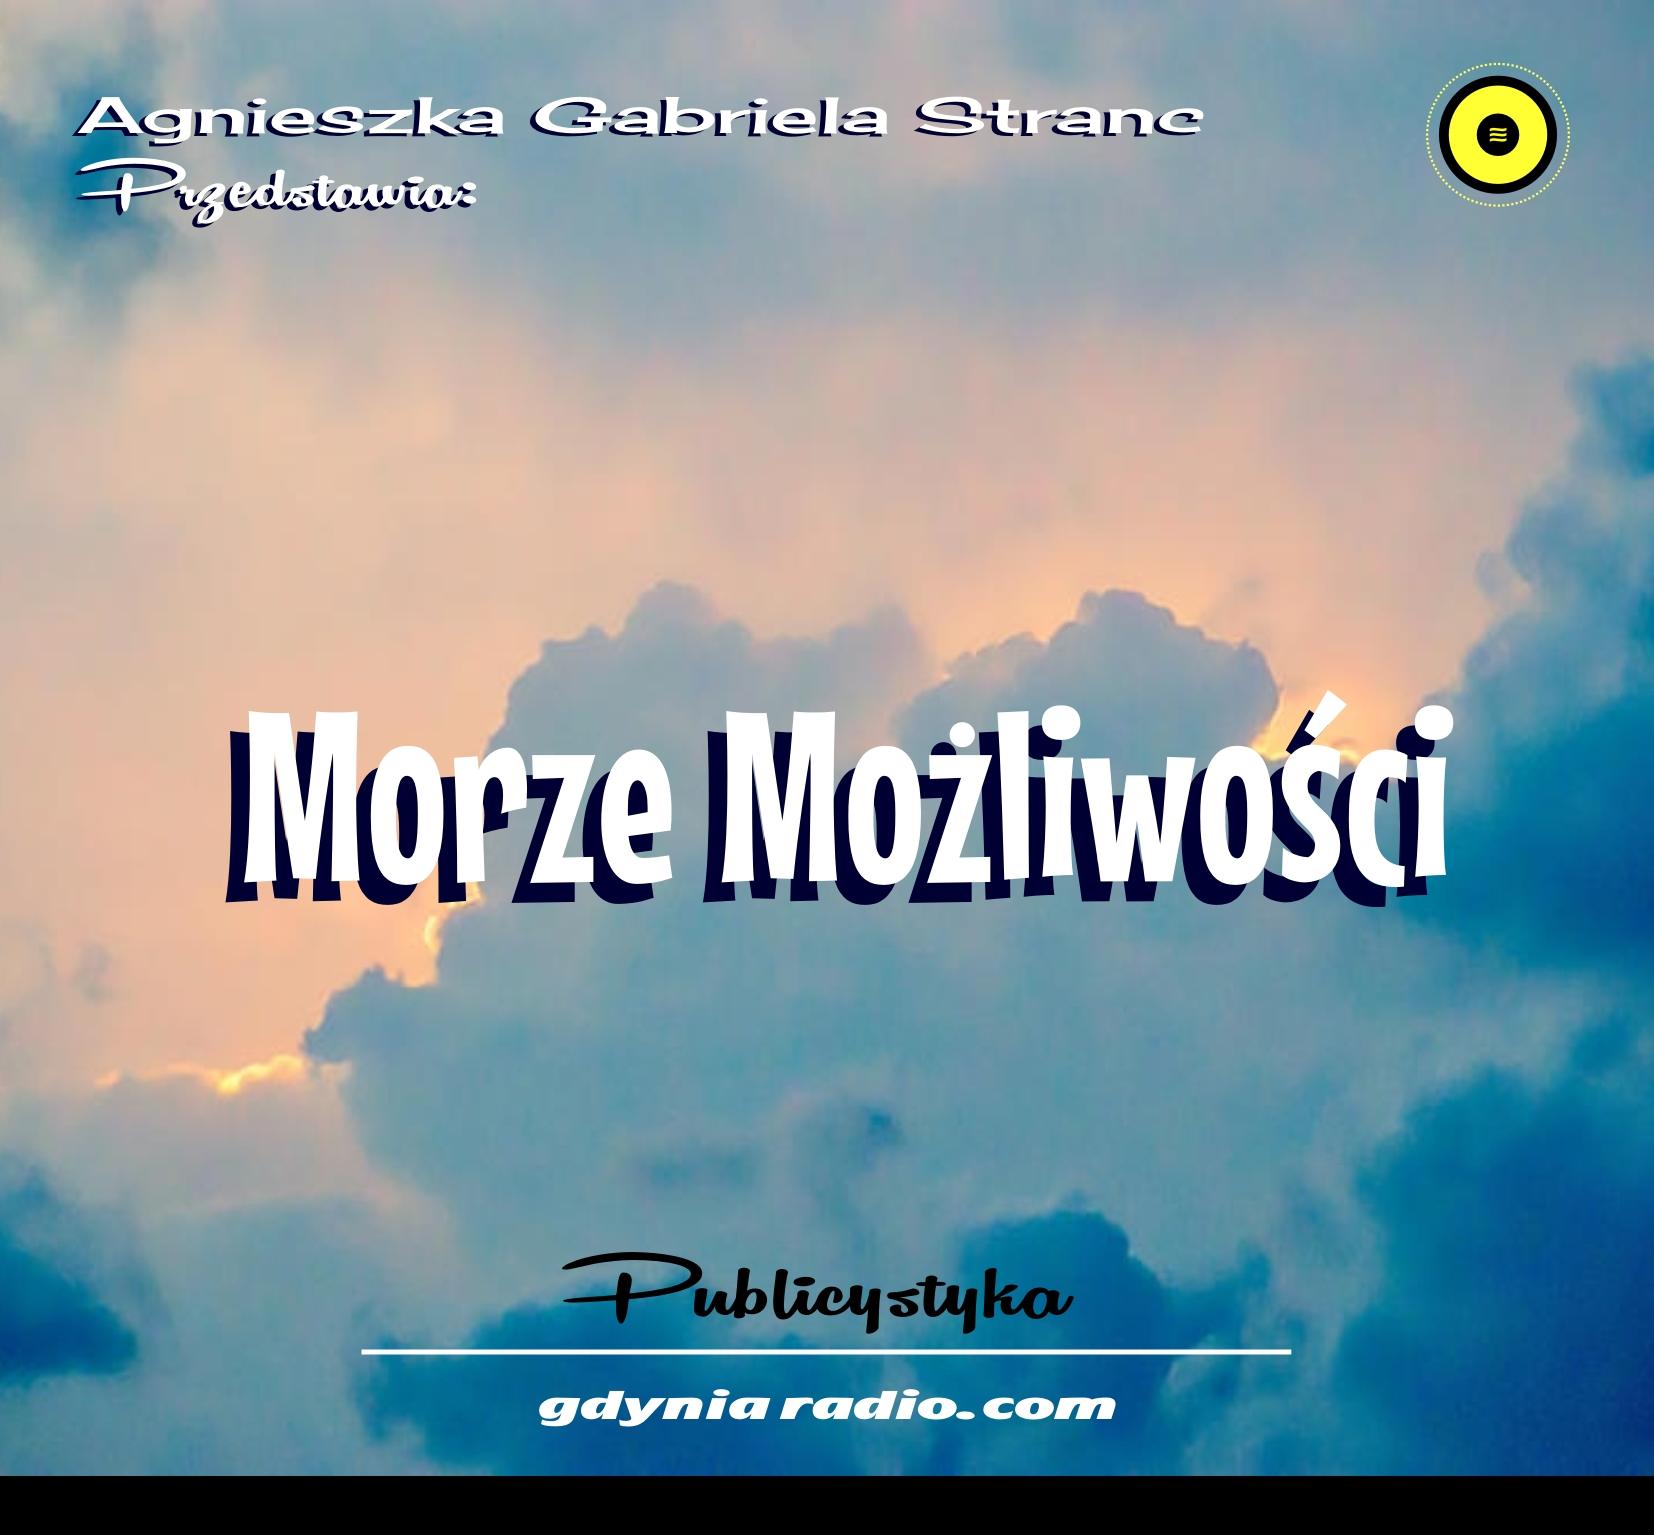 Gdynia Radio 2021 Moze mozliwosci 5 Agnieszka Stranc zzz Home Copy 2021 01 05